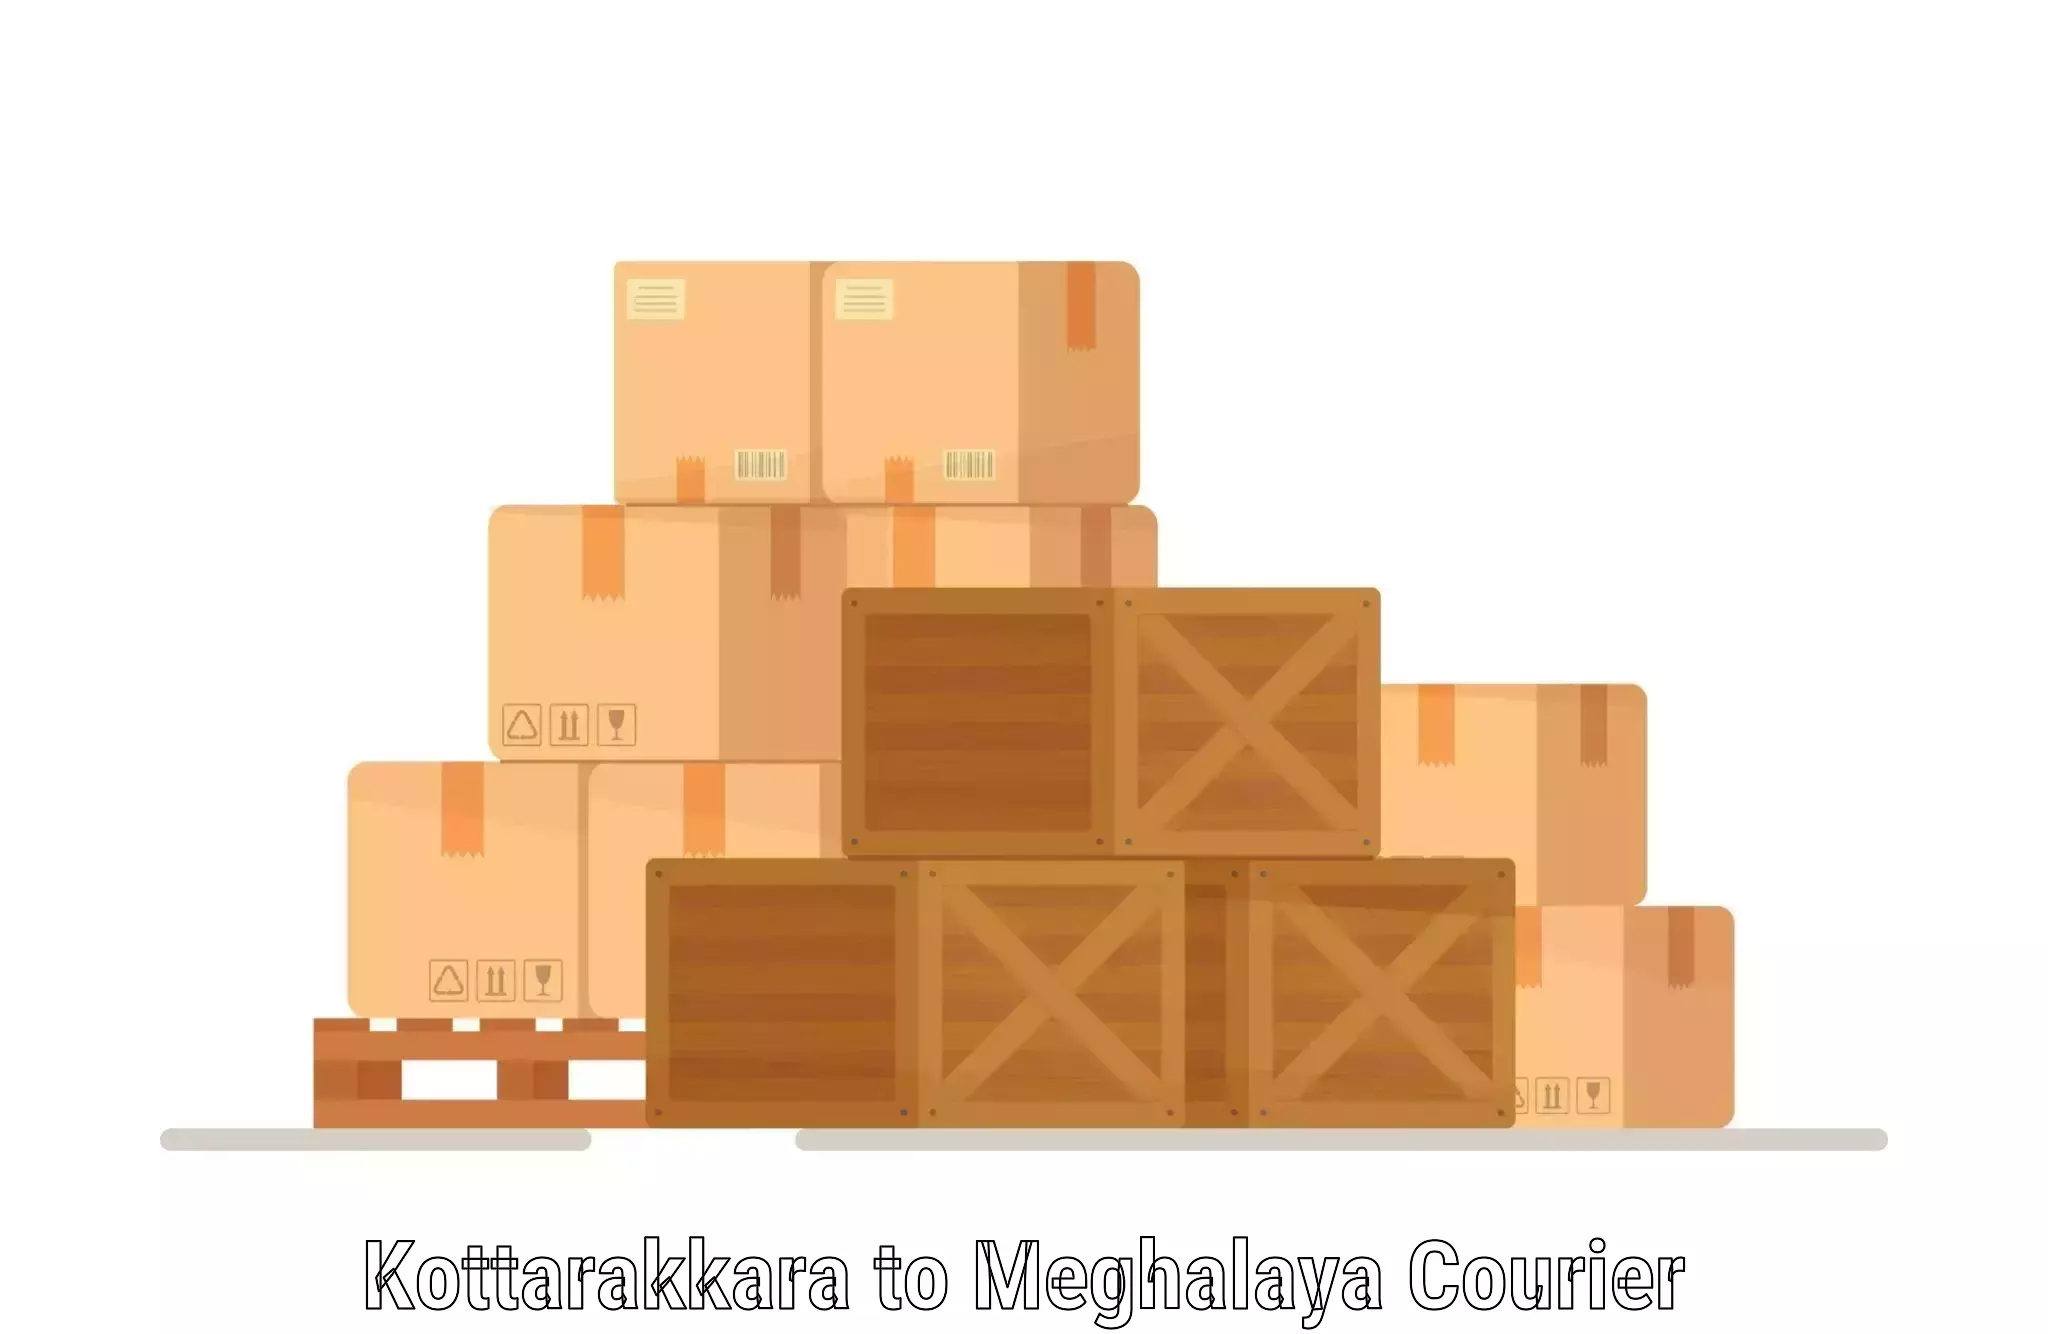 High-capacity courier solutions Kottarakkara to Shillong